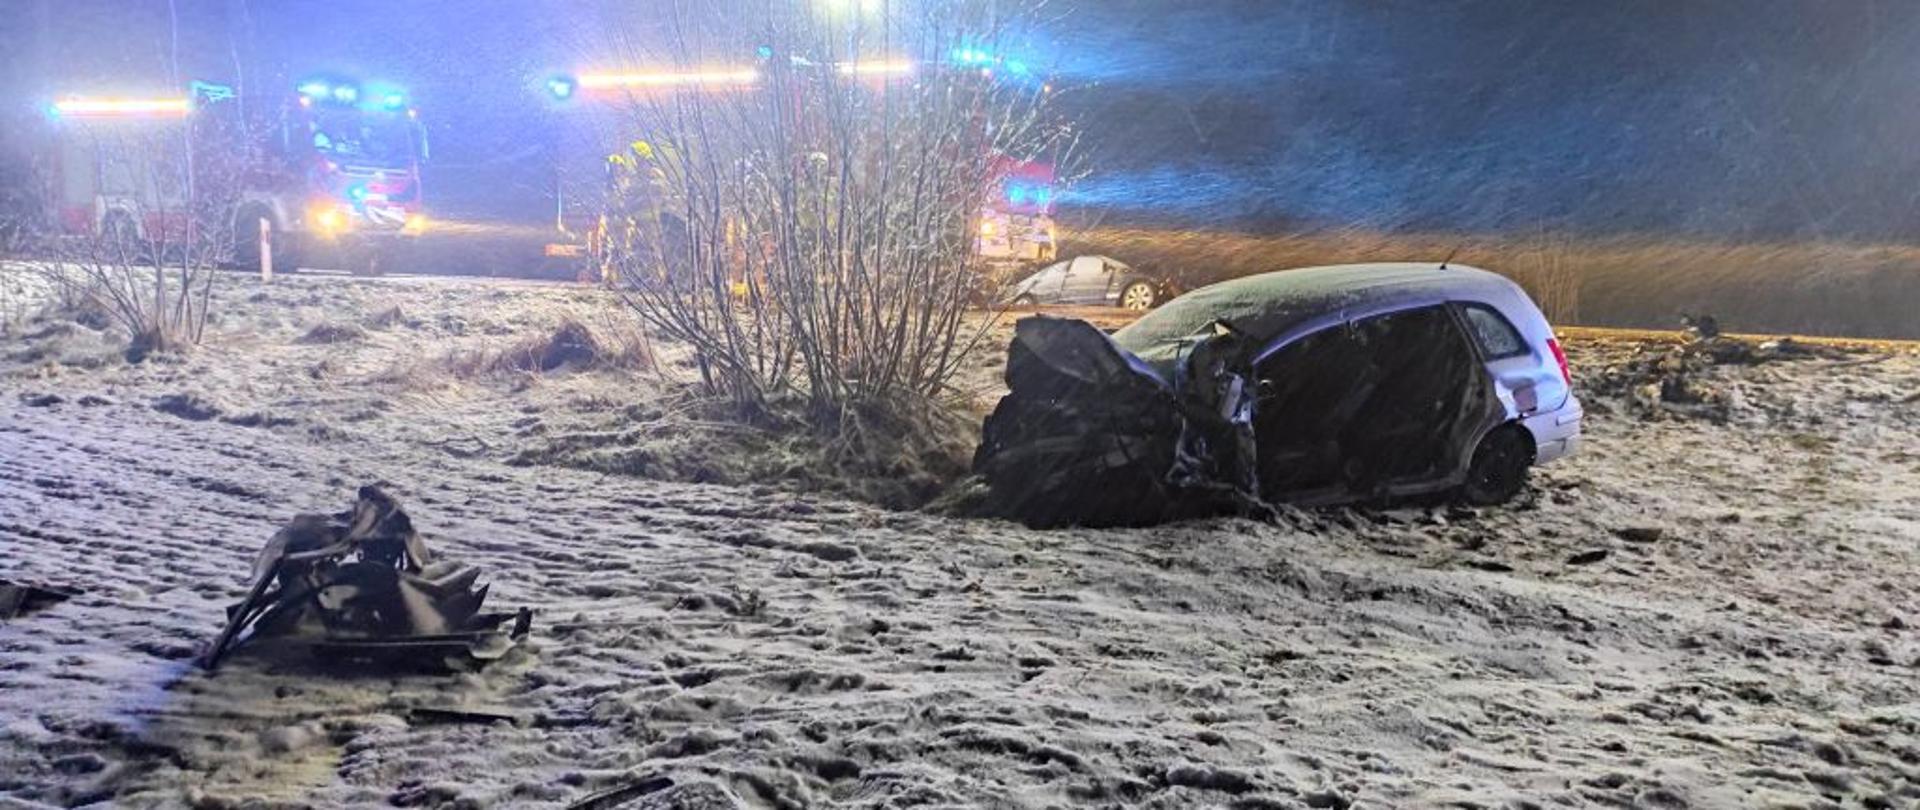 Na zaśnieżonym poboczu drogi leży rozbity samochód osobowy. Z tyłu stoją dwa czerwone wozy bojowe z włączonymi sygnałami świetlnymi.